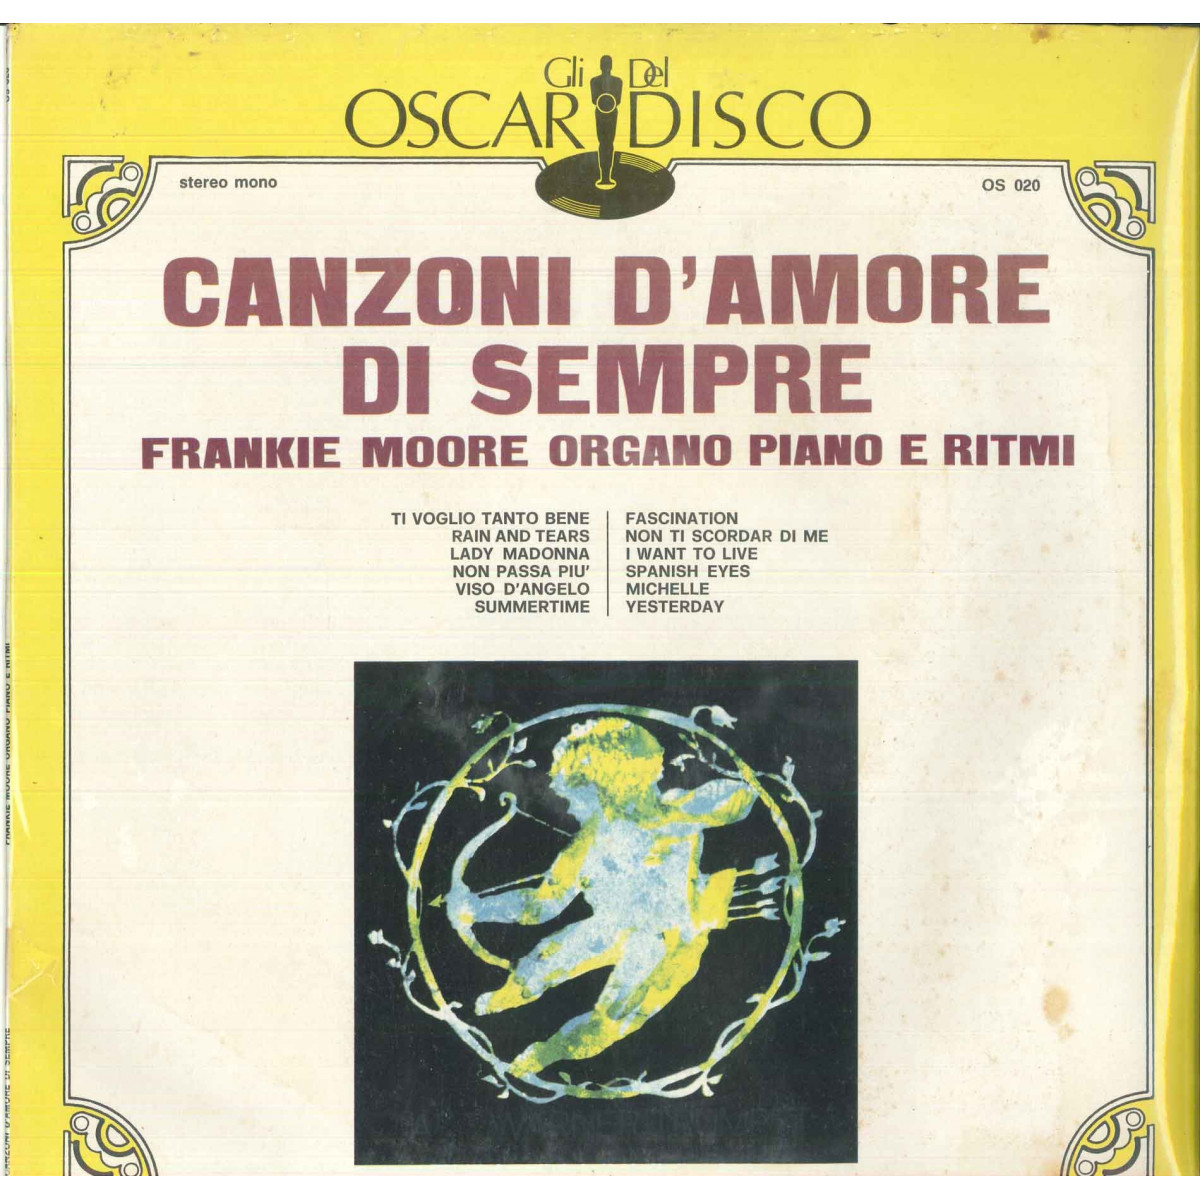 Frankie Moore Lp Vinile Canzoni D'amore Di Sempre Gli Oscar Del Disco